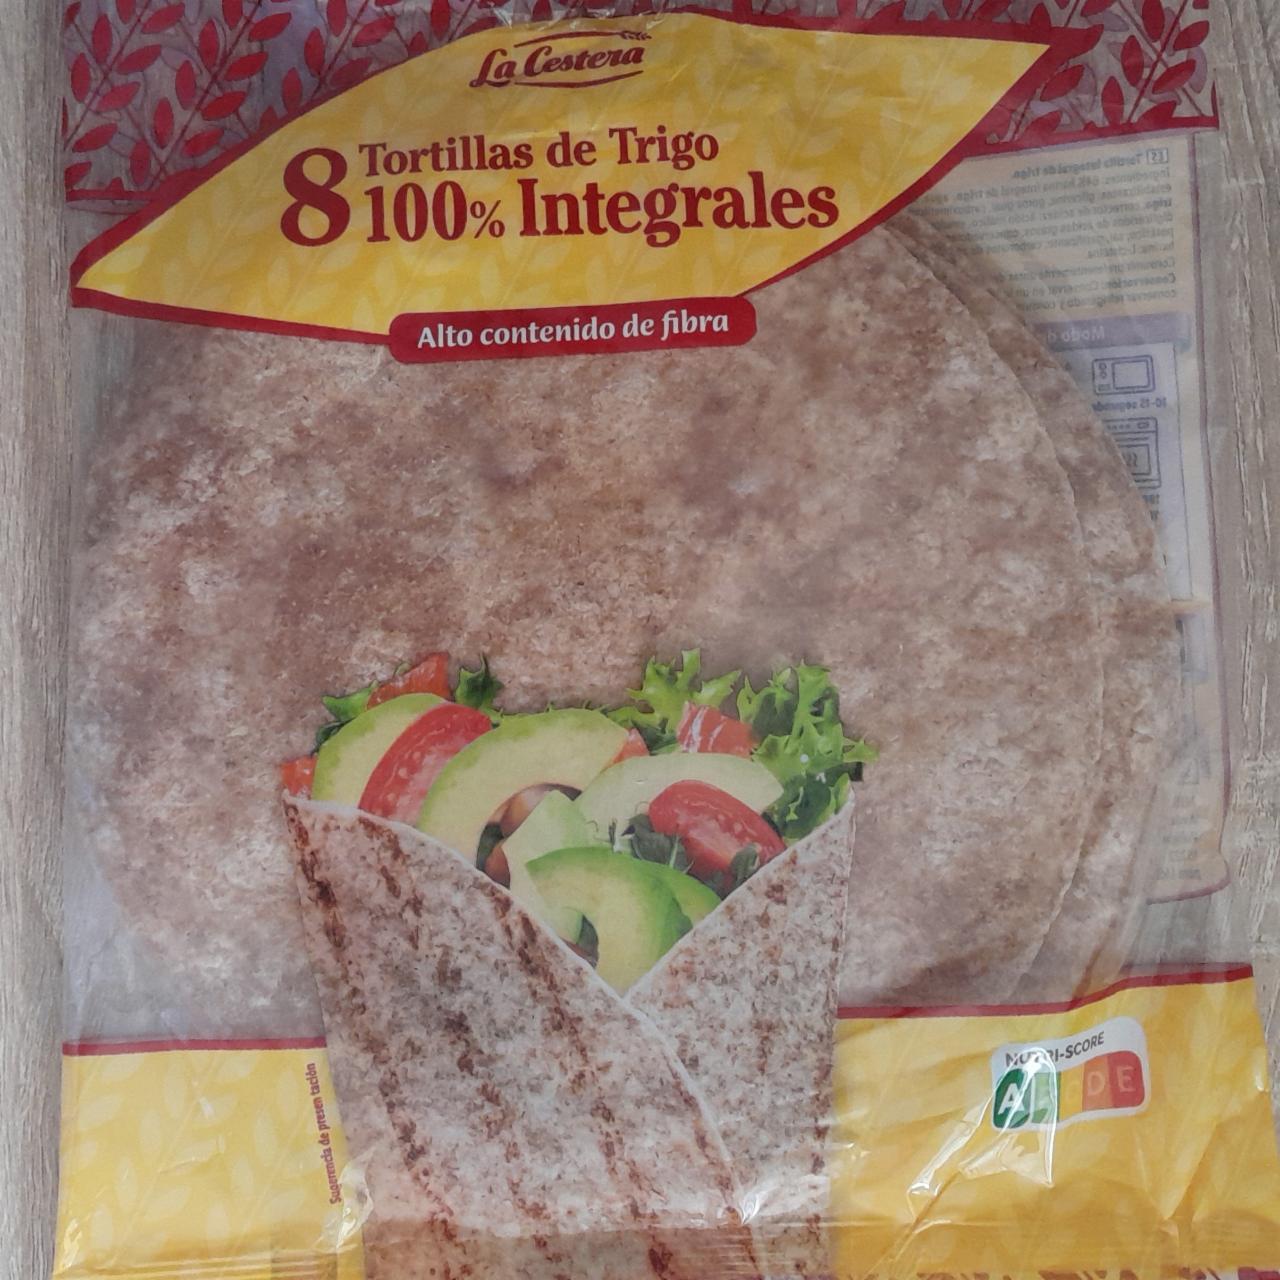 Fotografie - Tortillas de Trigo 100% Integrales La Cestera